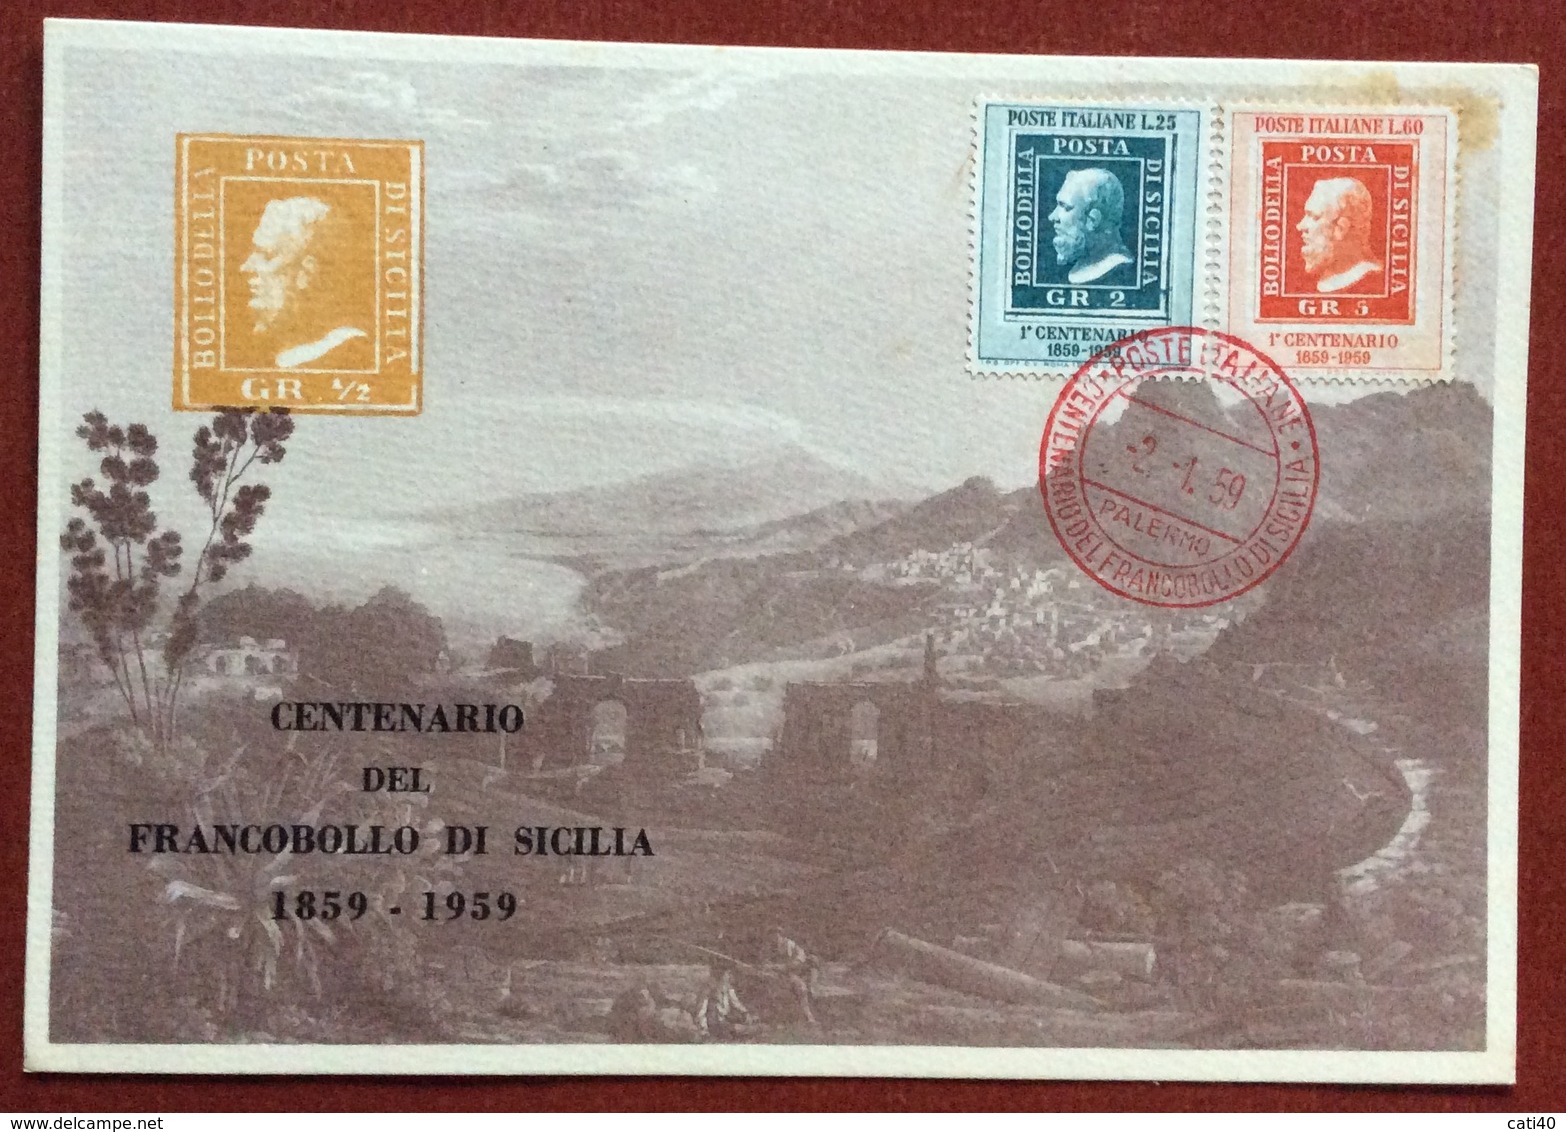 CENTENARIO  DEL FRANCOBOLLO DI SICILIA  1859 - 1959  CARTOLINA UFFICIALE TEMPIO DI SEGESTA - Non Classificati